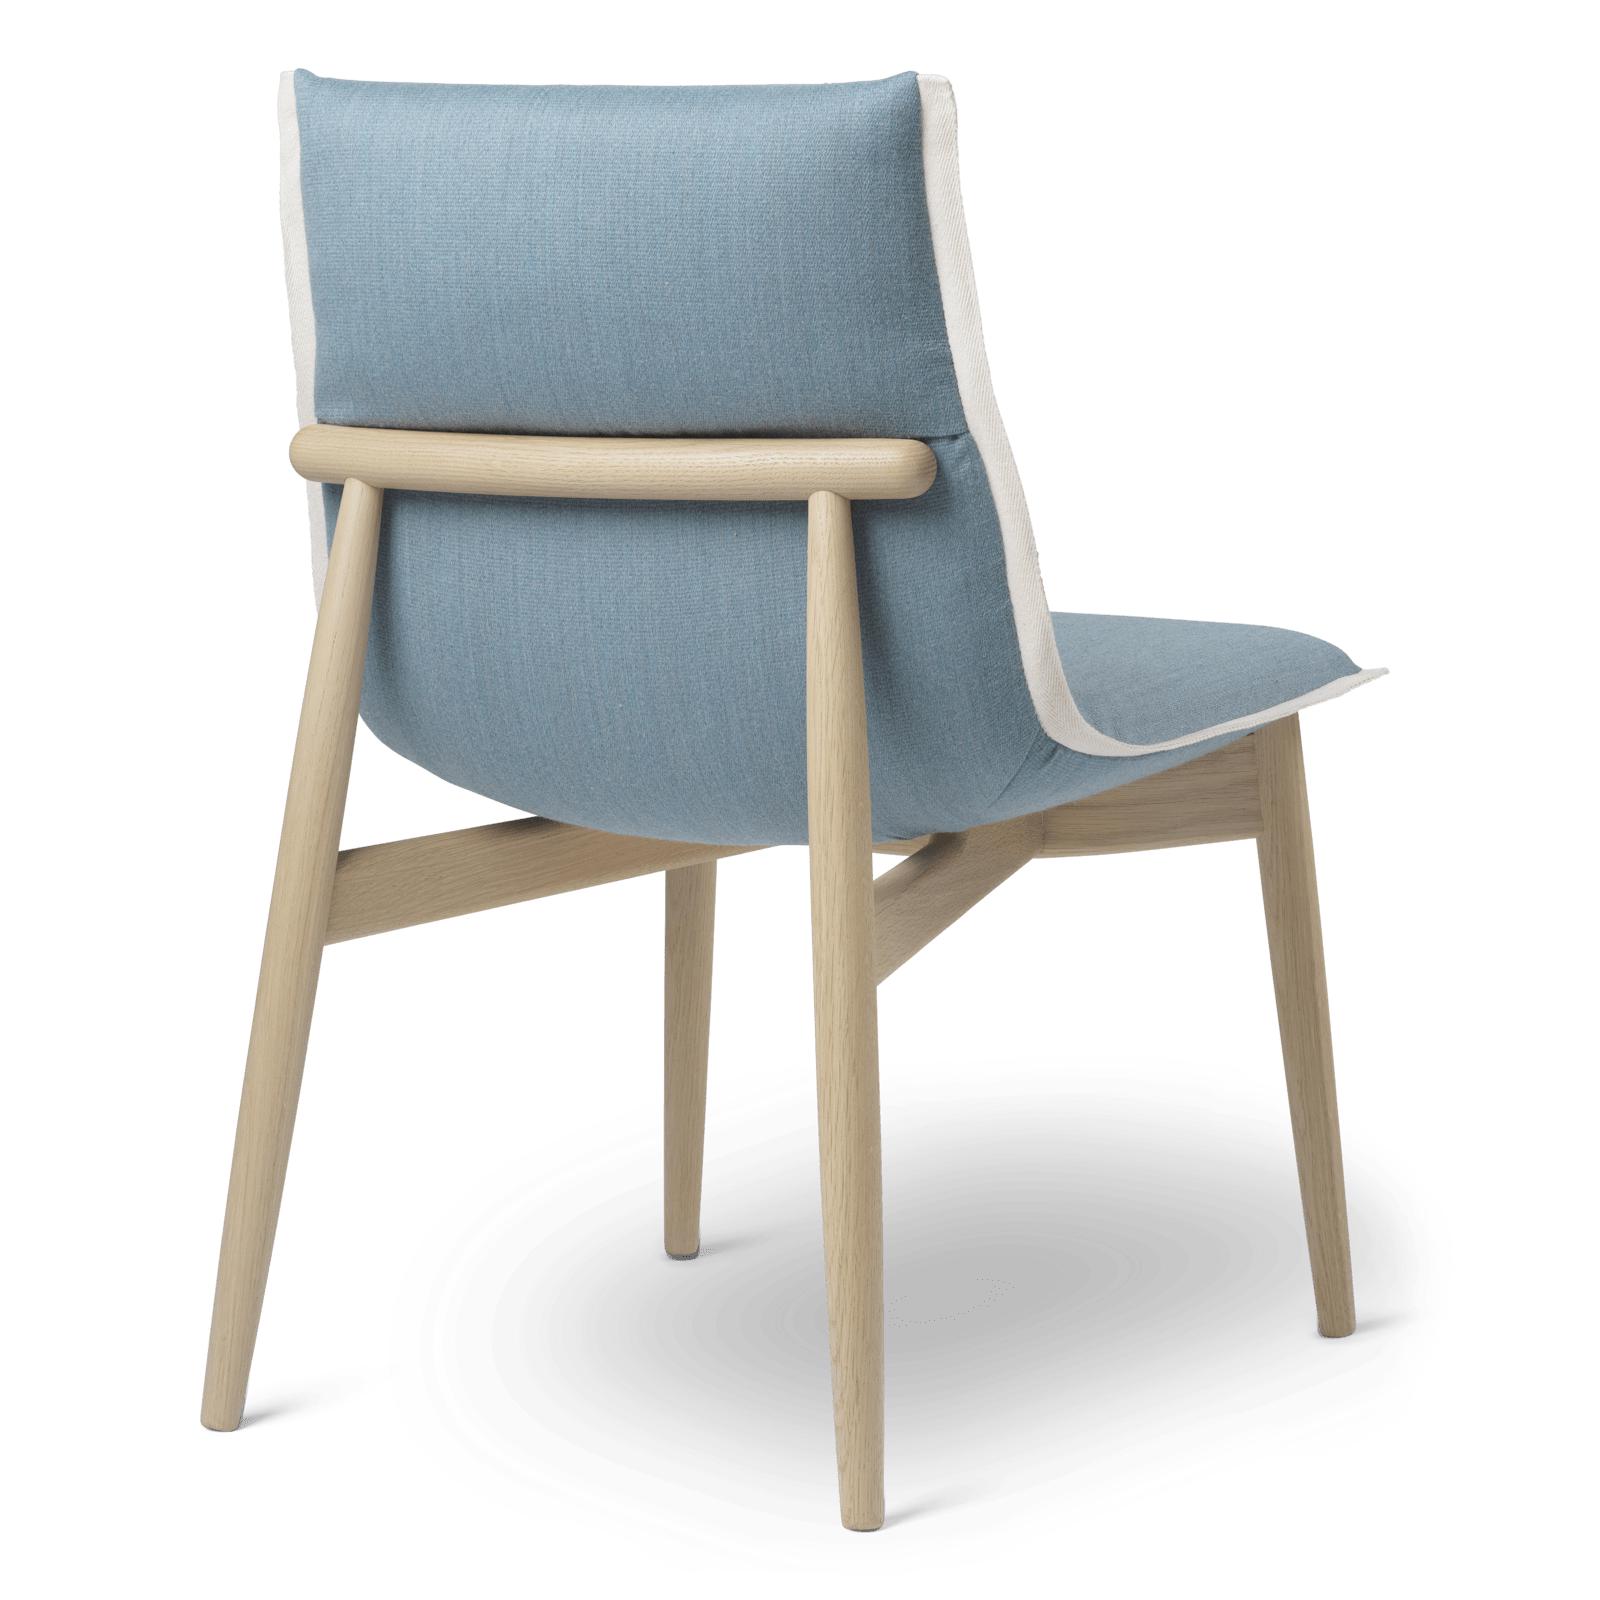 Carl Hansen E004 Embrace Chair, White Oiled Oak, Light Blue Stoff